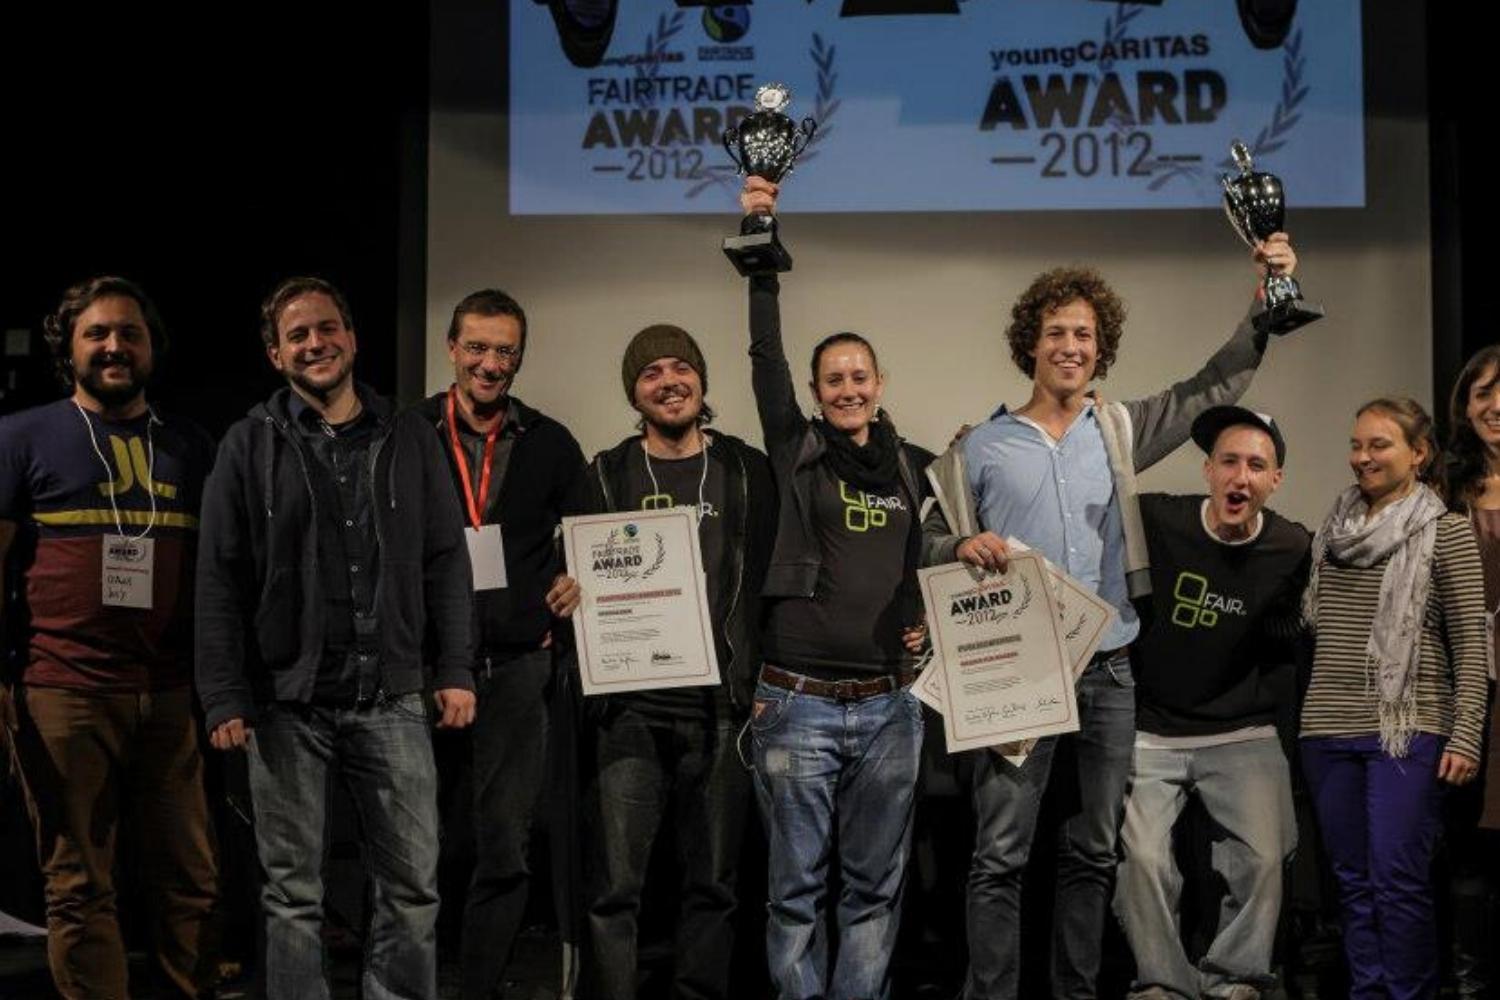 Verein_FAIR_Fairtrade_Award2012